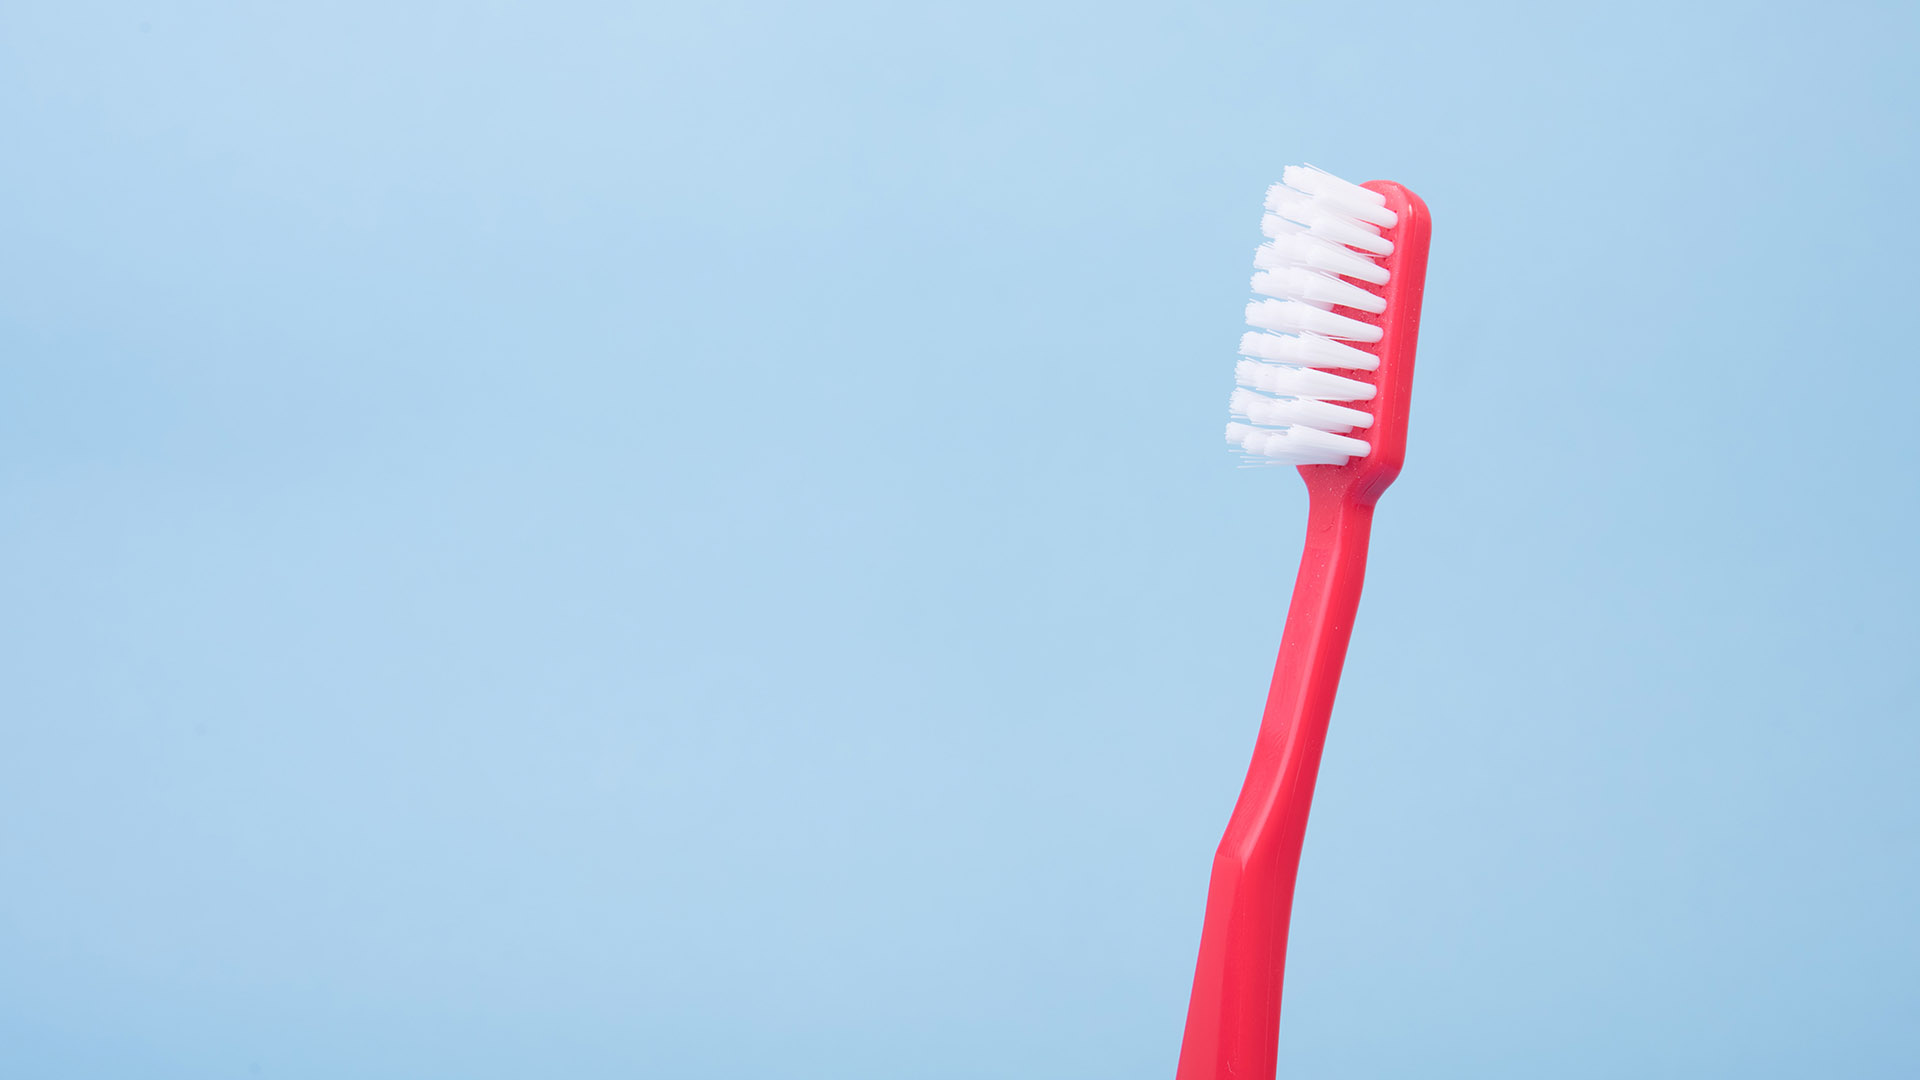 Rode tandenborstel als voorbeeld van dagelijkse routine